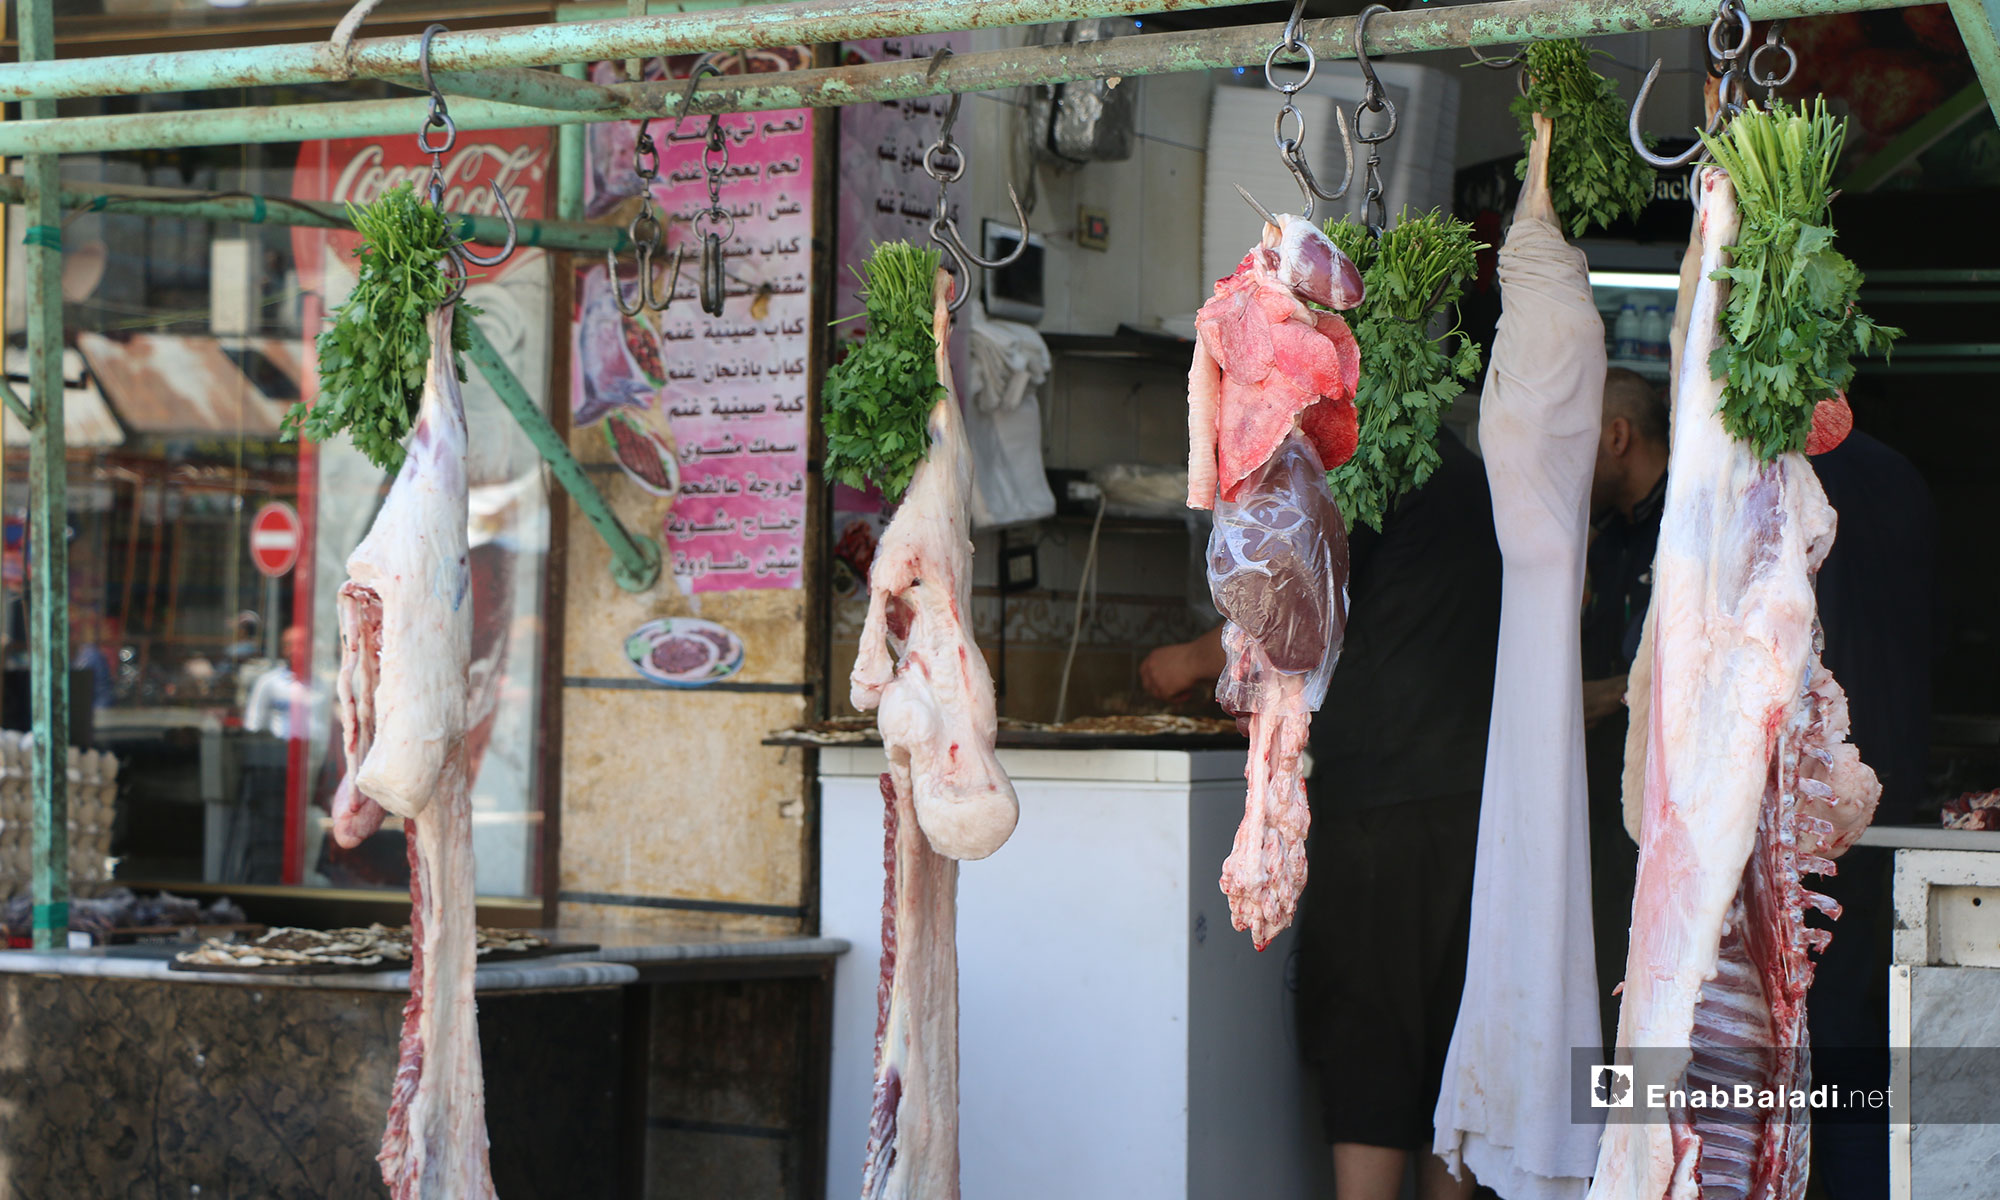 ضبط أسعار اللحوم في أسواق مدينة اعزاز بريف حلب الشمالي - 5 من آيار 2019 (عنب بلدي)